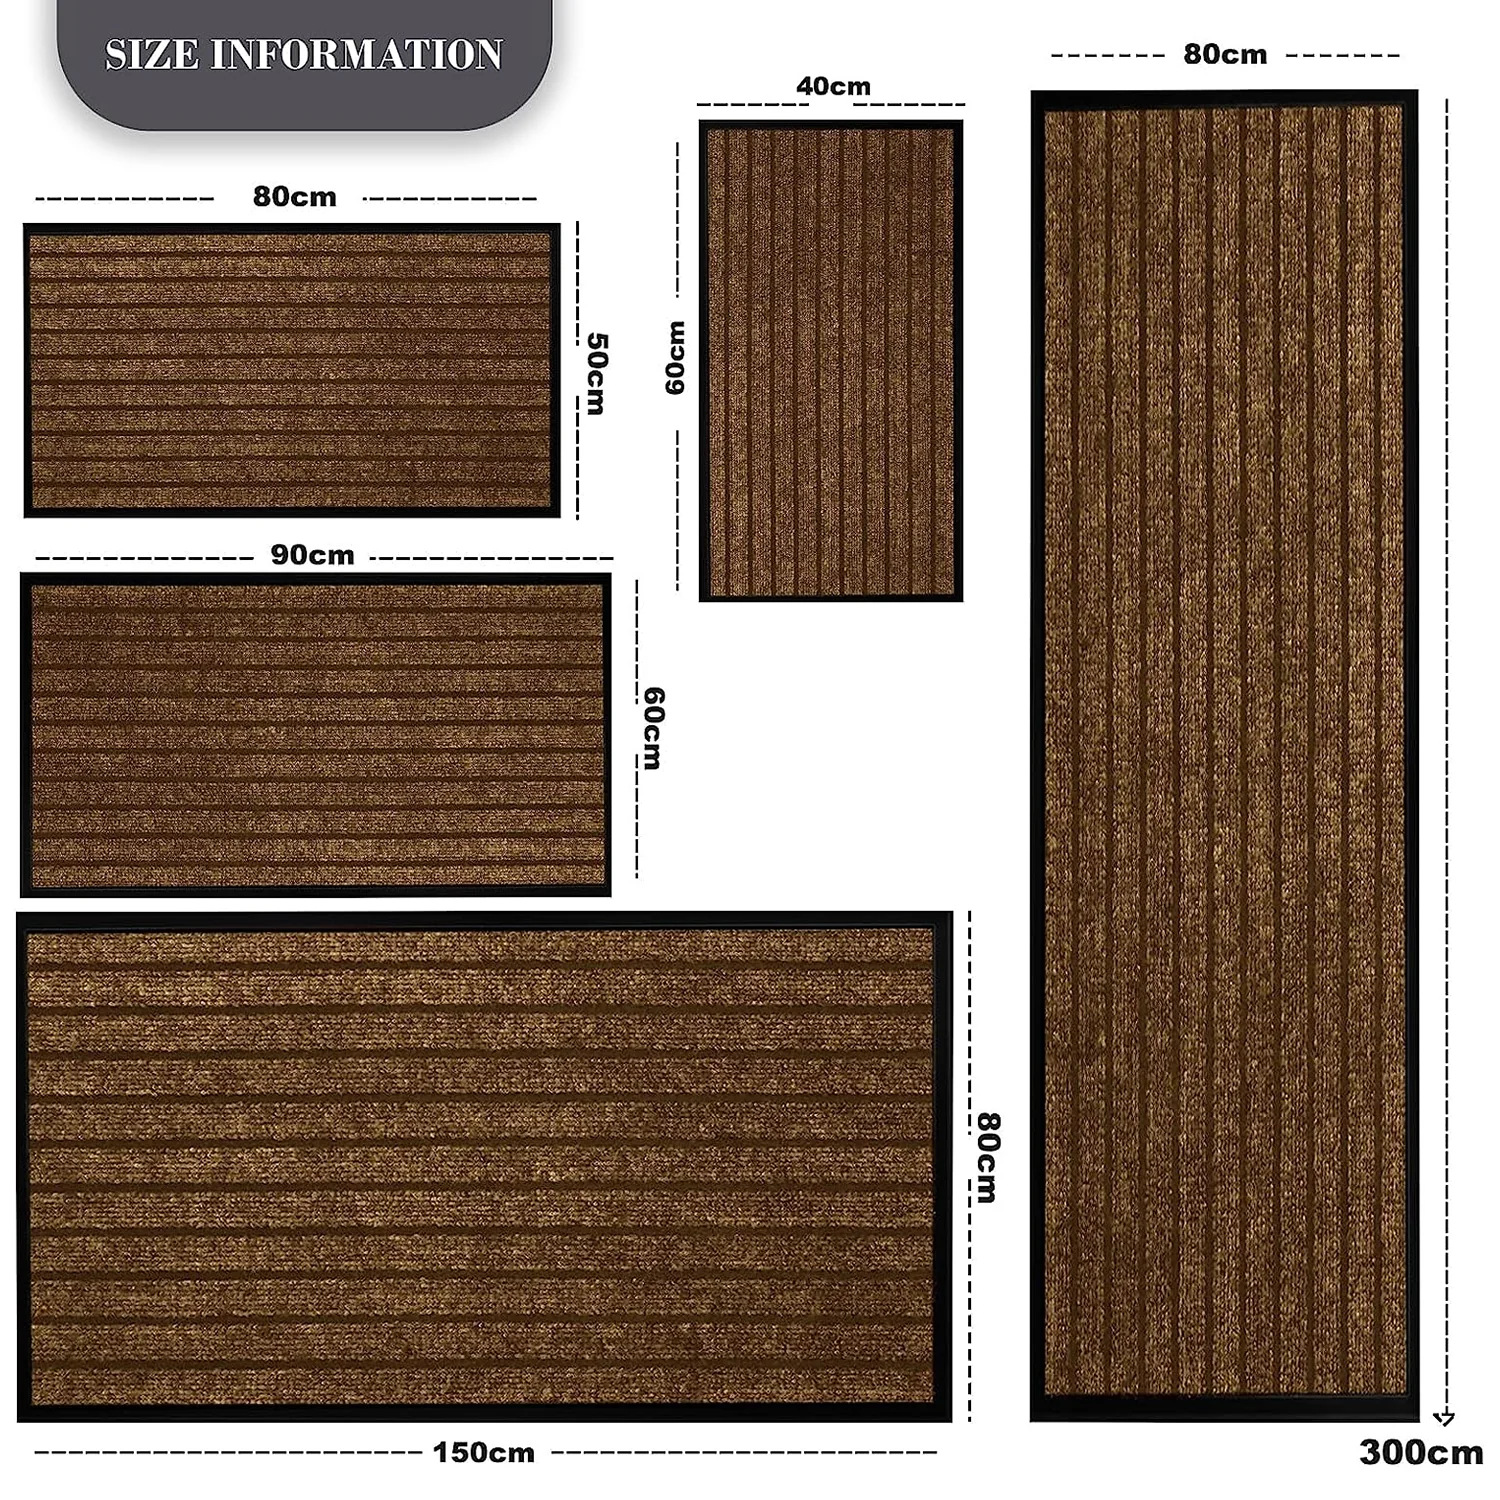 Doormats Indoor & Outdoor Non Slip Rubber